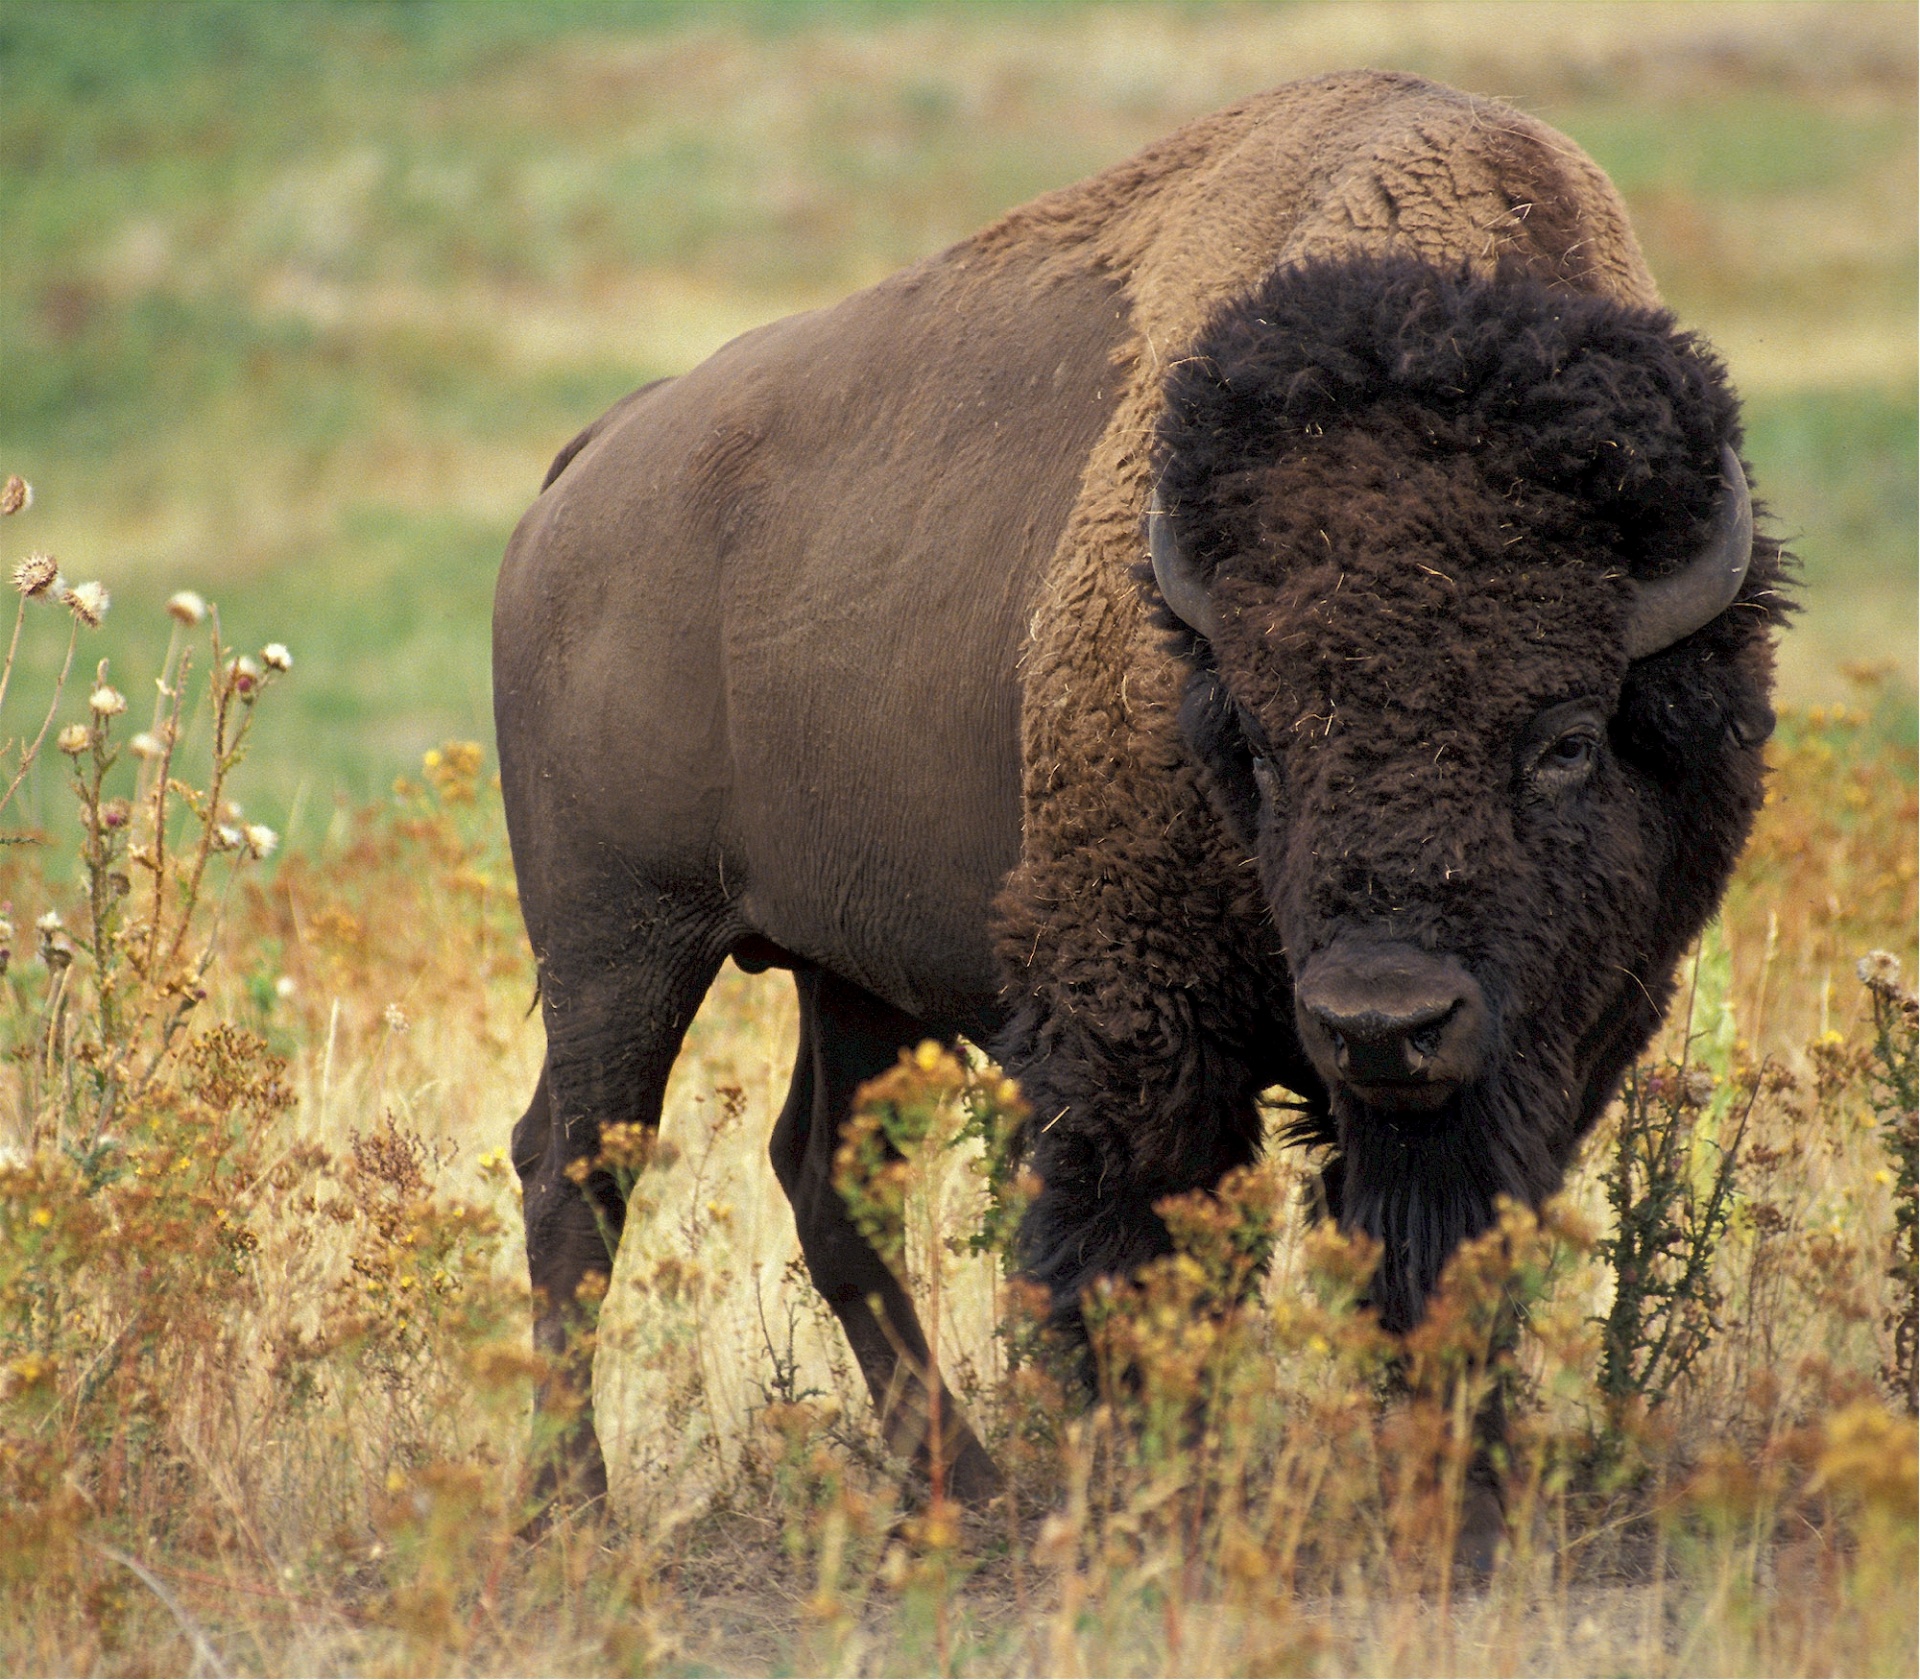 Bison Buffalo Portrait